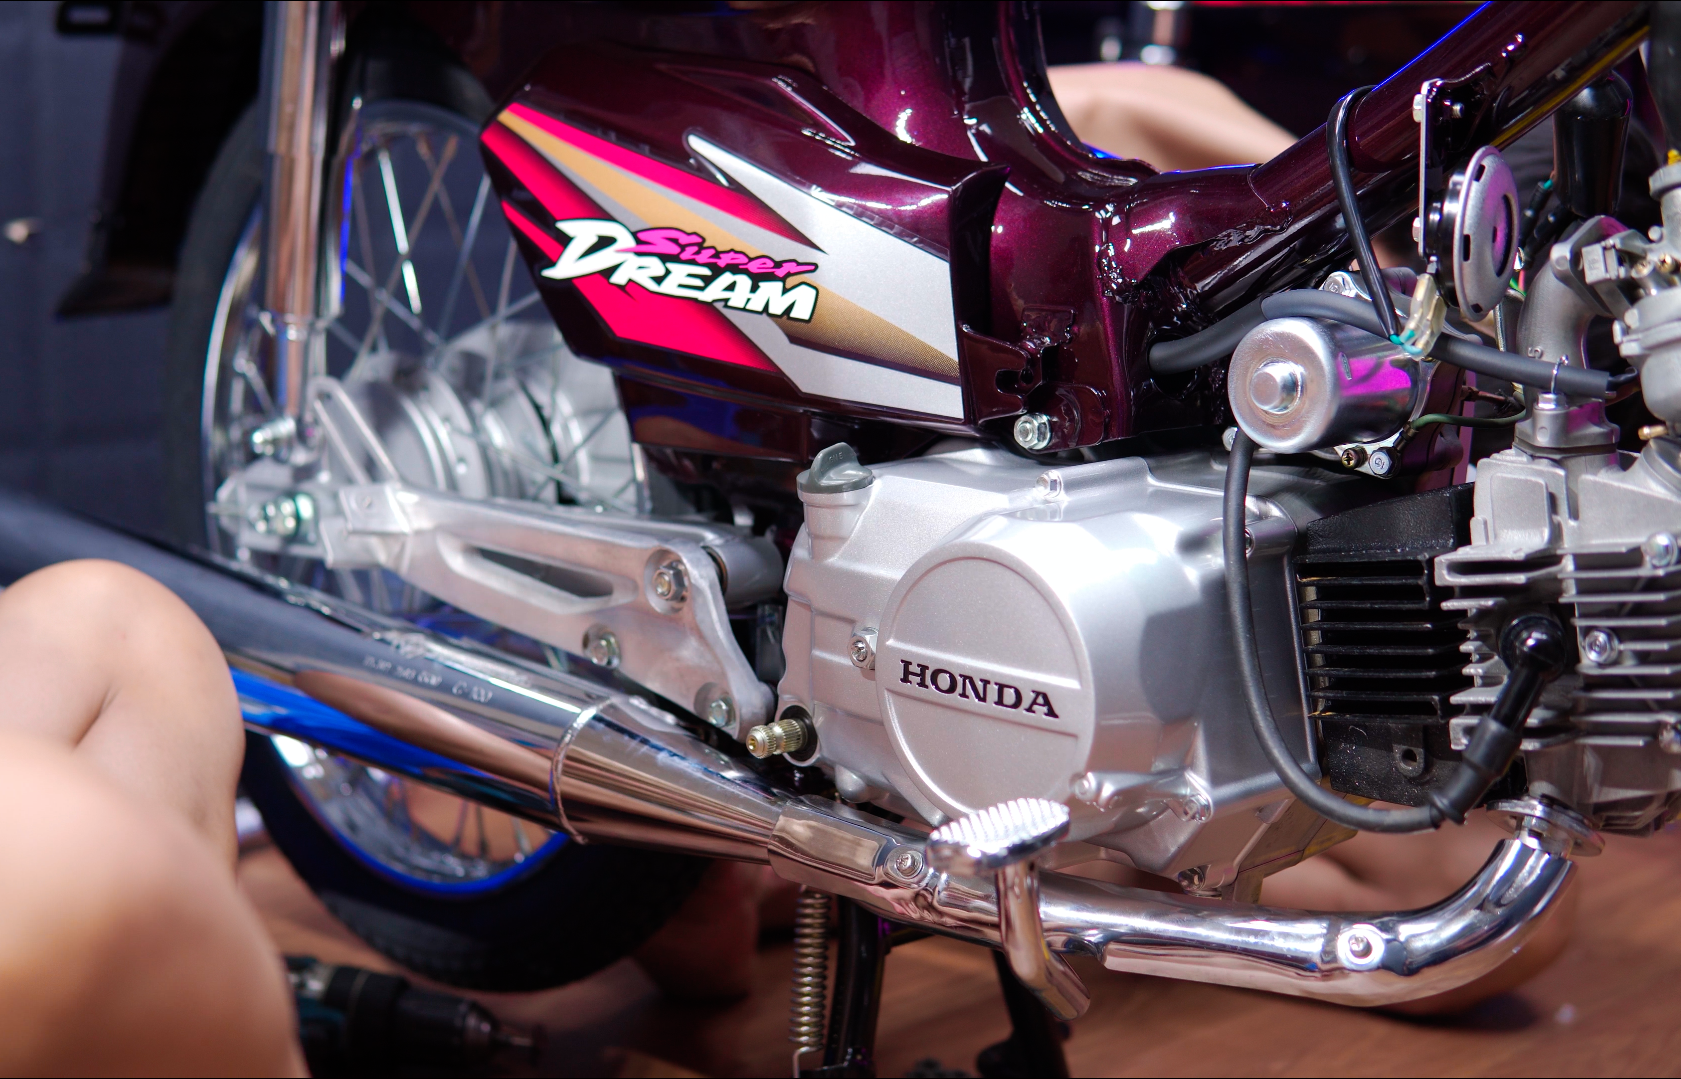 Tin tức, hình ảnh, video clip mới nhất về Honda Dream II